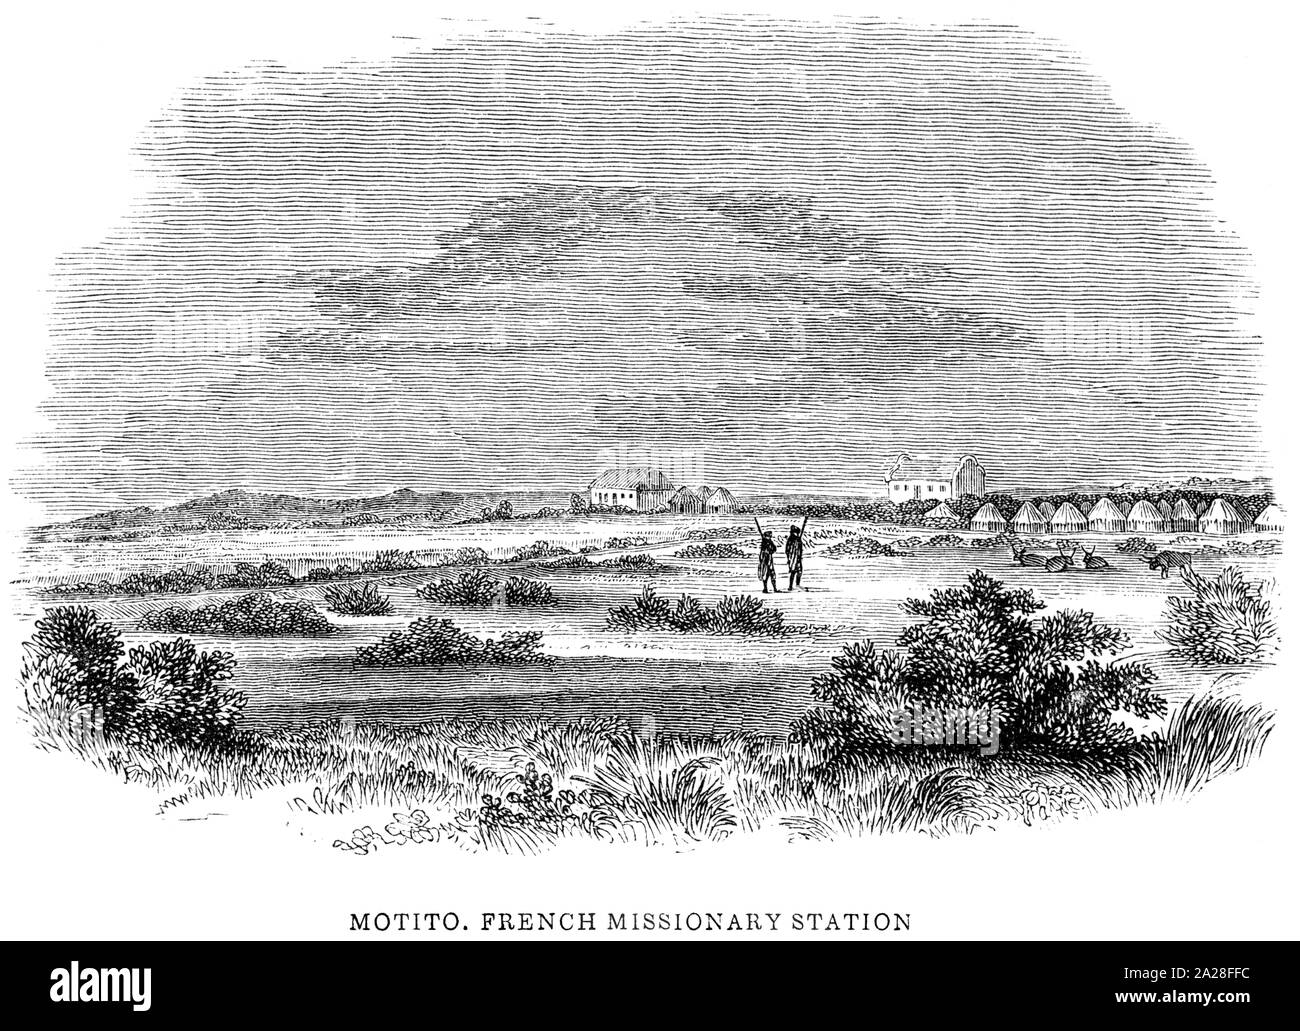 Une illustration de Motito, station missionnaire français en Afrique du Sud numérisées à haute résolution à partir d'un livre de Robert Moffat imprimé en 1842. Banque D'Images